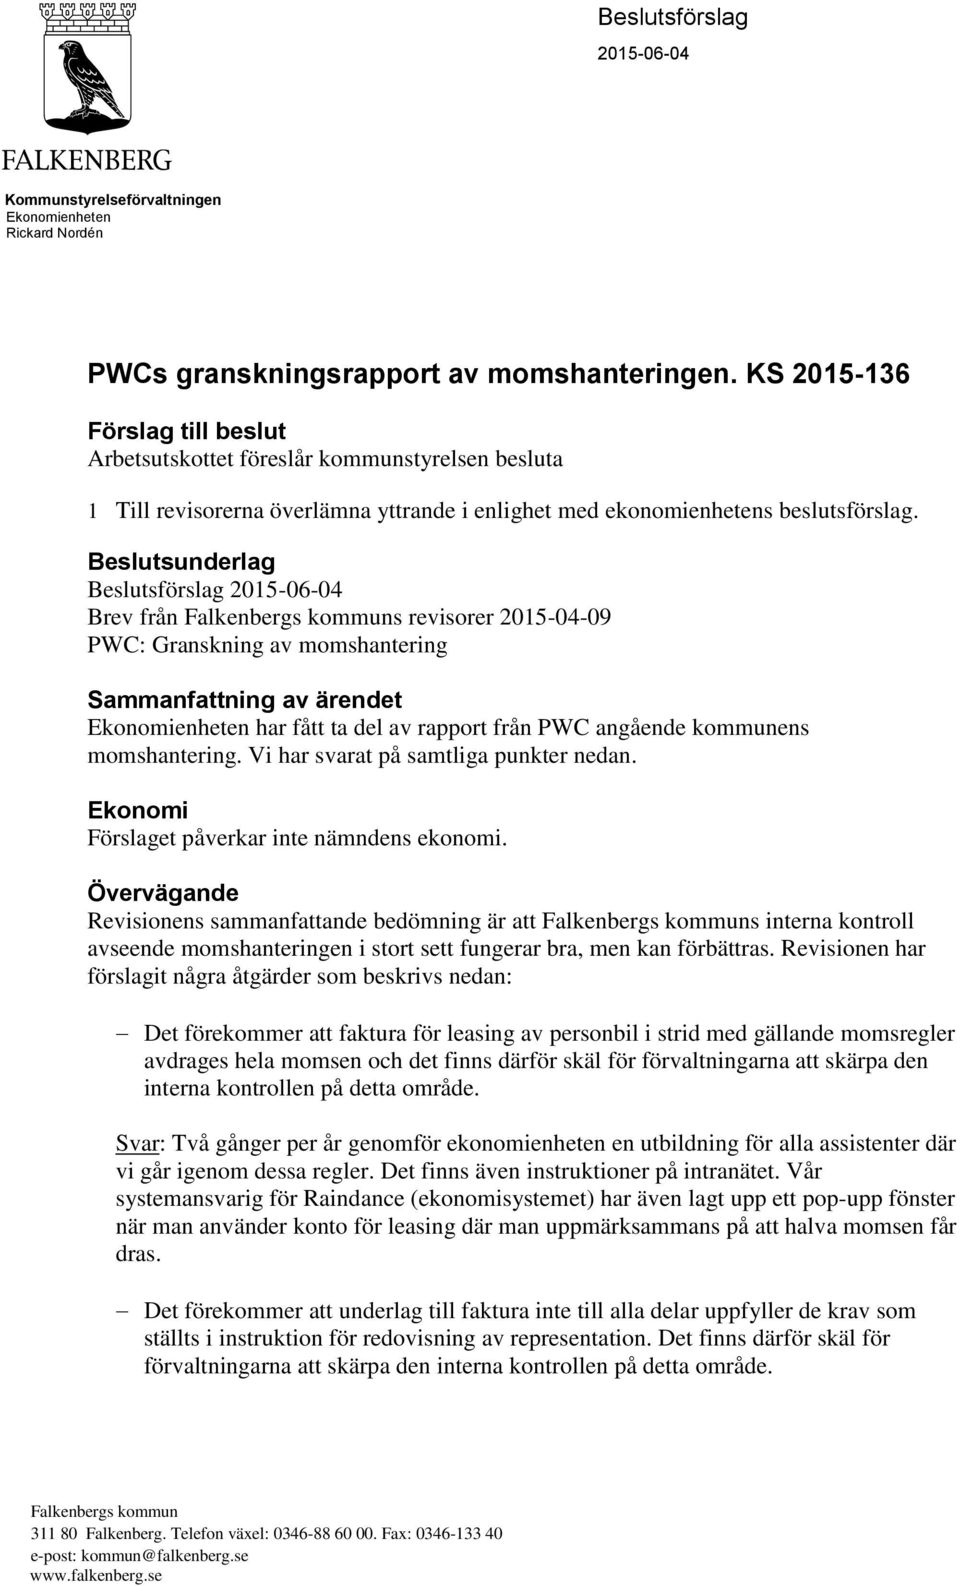 Beslutsunderlag Beslutsförslag 2015-06-04 Brev från Falkenbergs kommuns revisorer 2015-04-09 PWC: Granskning av momshantering Sammanfattning av ärendet Ekonomienheten har fått ta del av rapport från